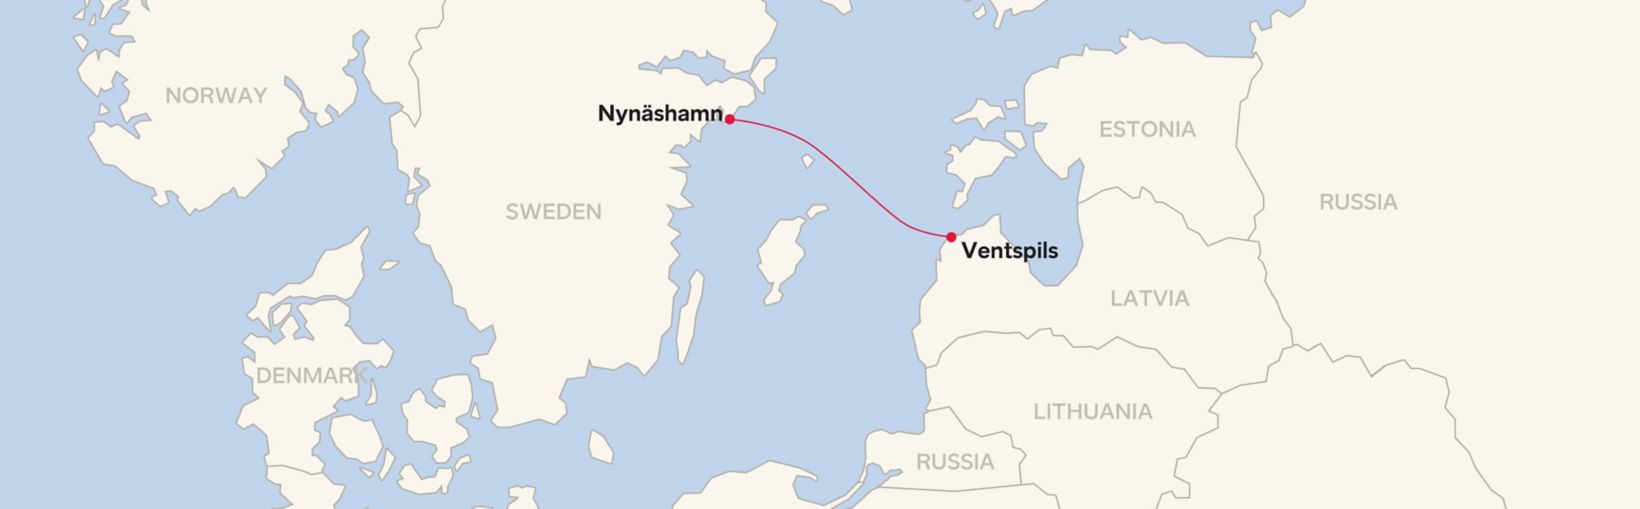 Mapa de ruta para Ventspils - Nynäshamn